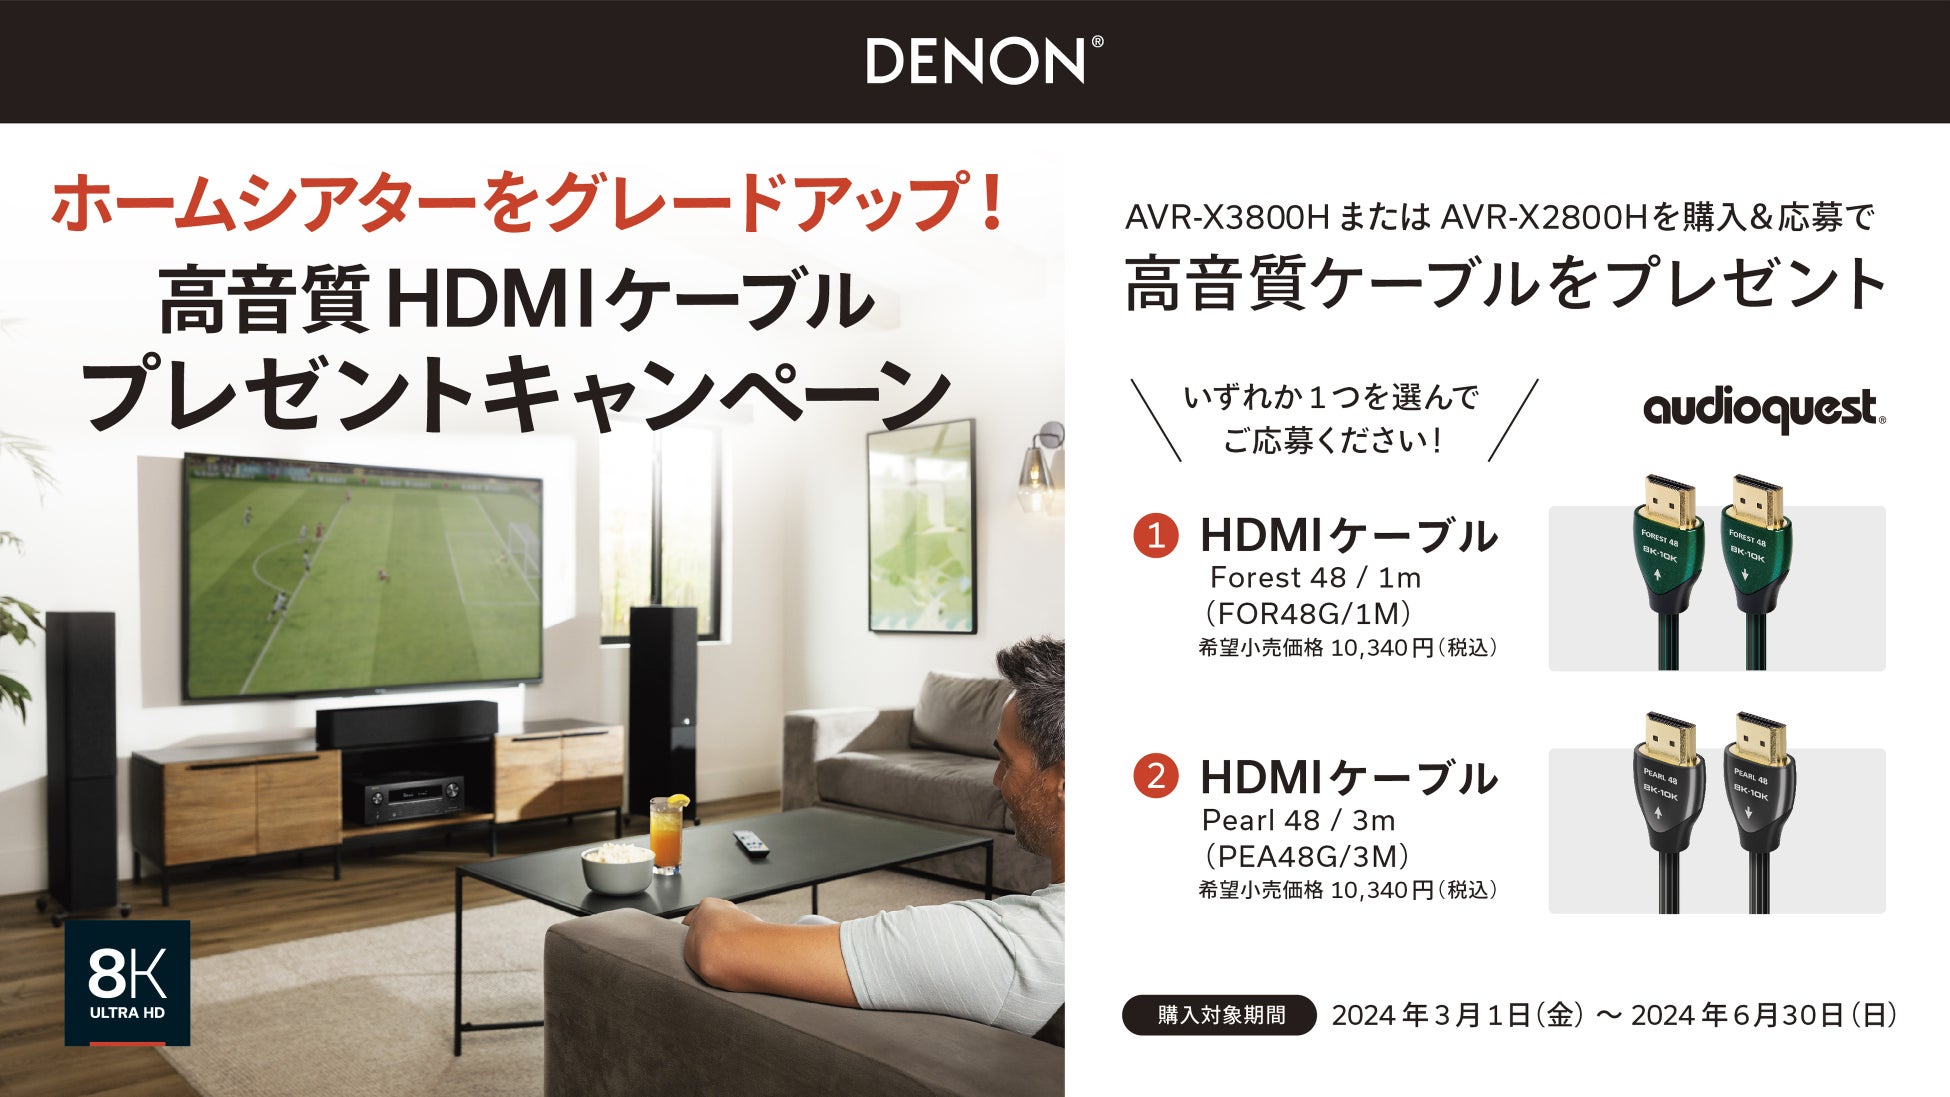 [Denonキャンペーン情報]「ホームシアターをグレードアップ！高音質HDMIケーブルプレゼントキャンペーン」実施のお知らせ